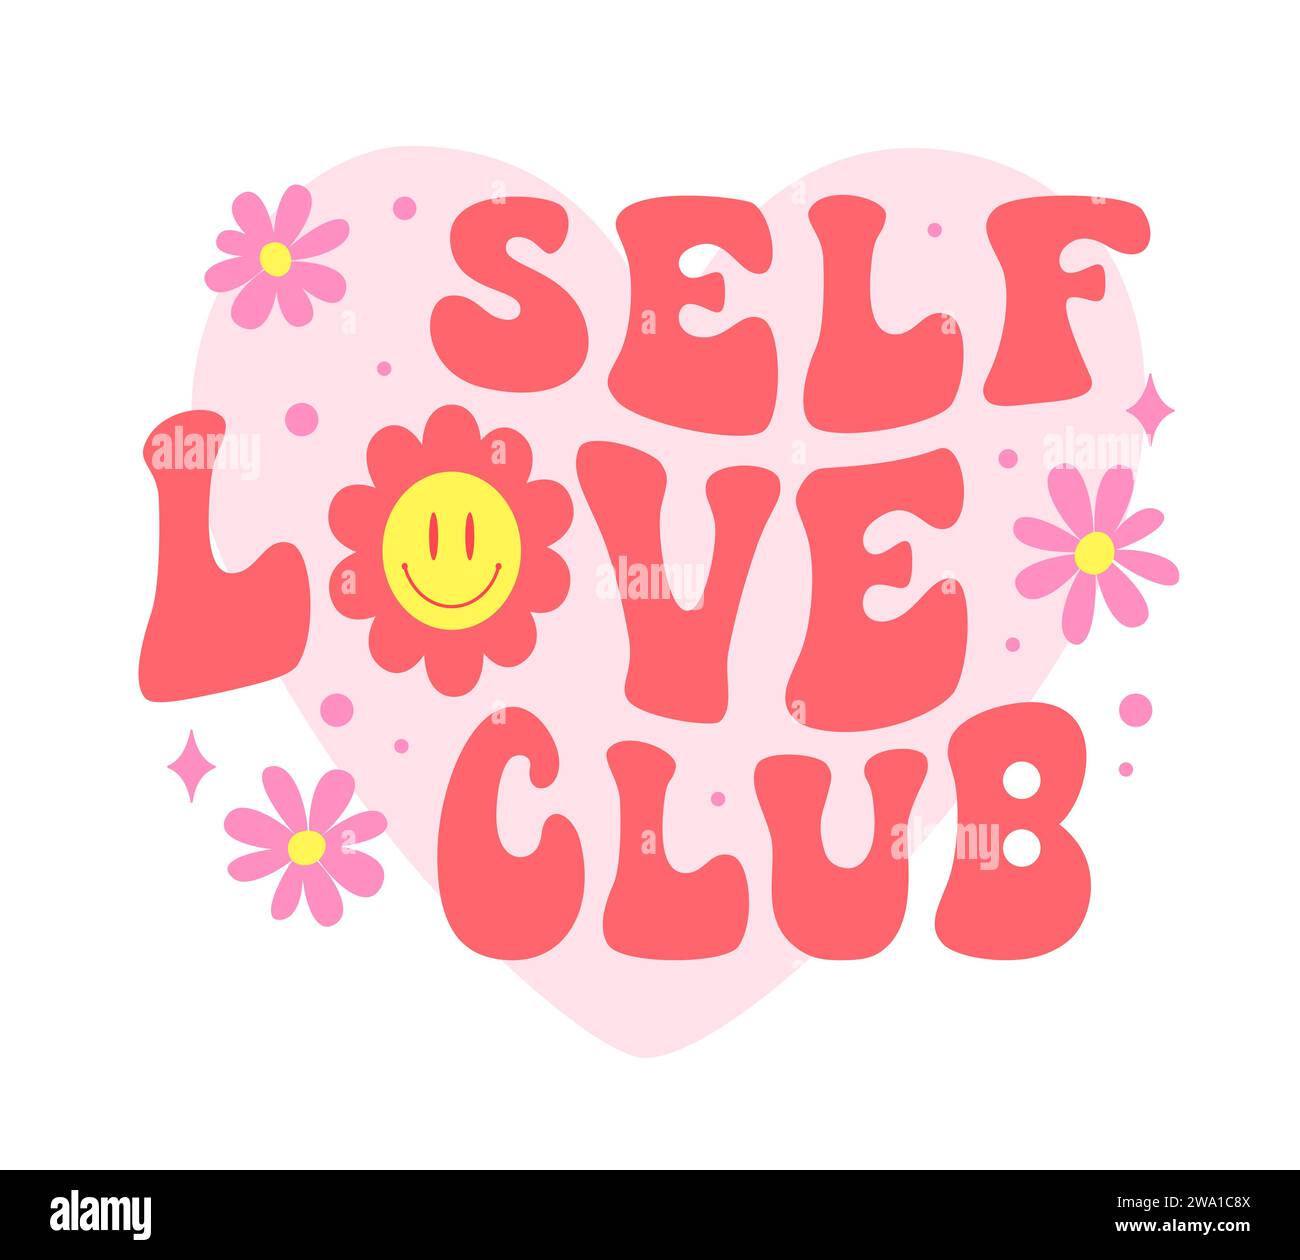 Vintage-grooviges Zitat des Self Love Clubs. Vektor-Retro-Schriftart mit Blumen, Motivationsslogan der Akzeptanz, Wertschätzung und Feier Ihrer Einzigartigkeit, die innere Stärke und echtes Glück fördert Stock Vektor